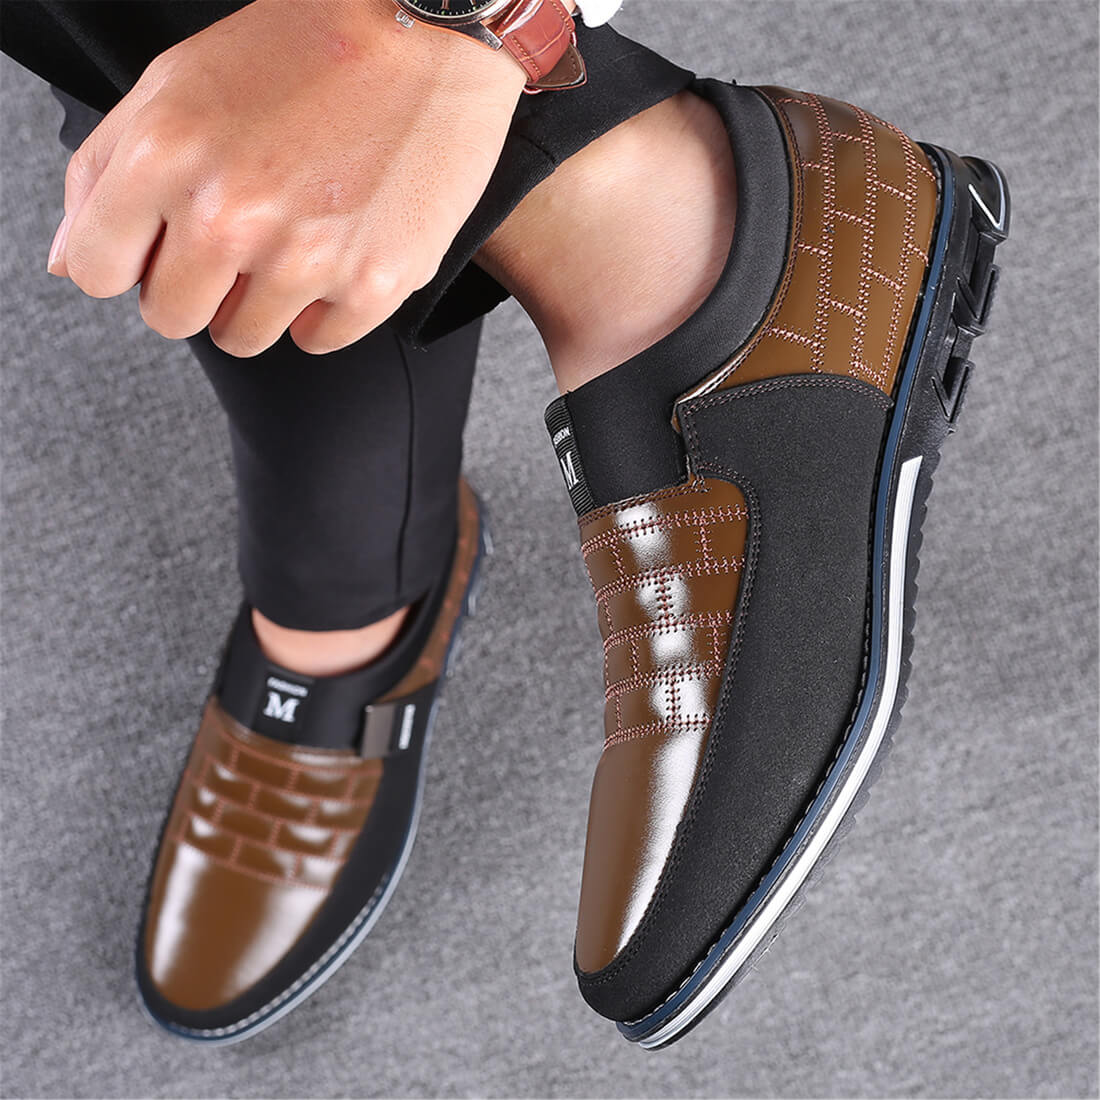 Slip-On Orthopedic Leather Shoes